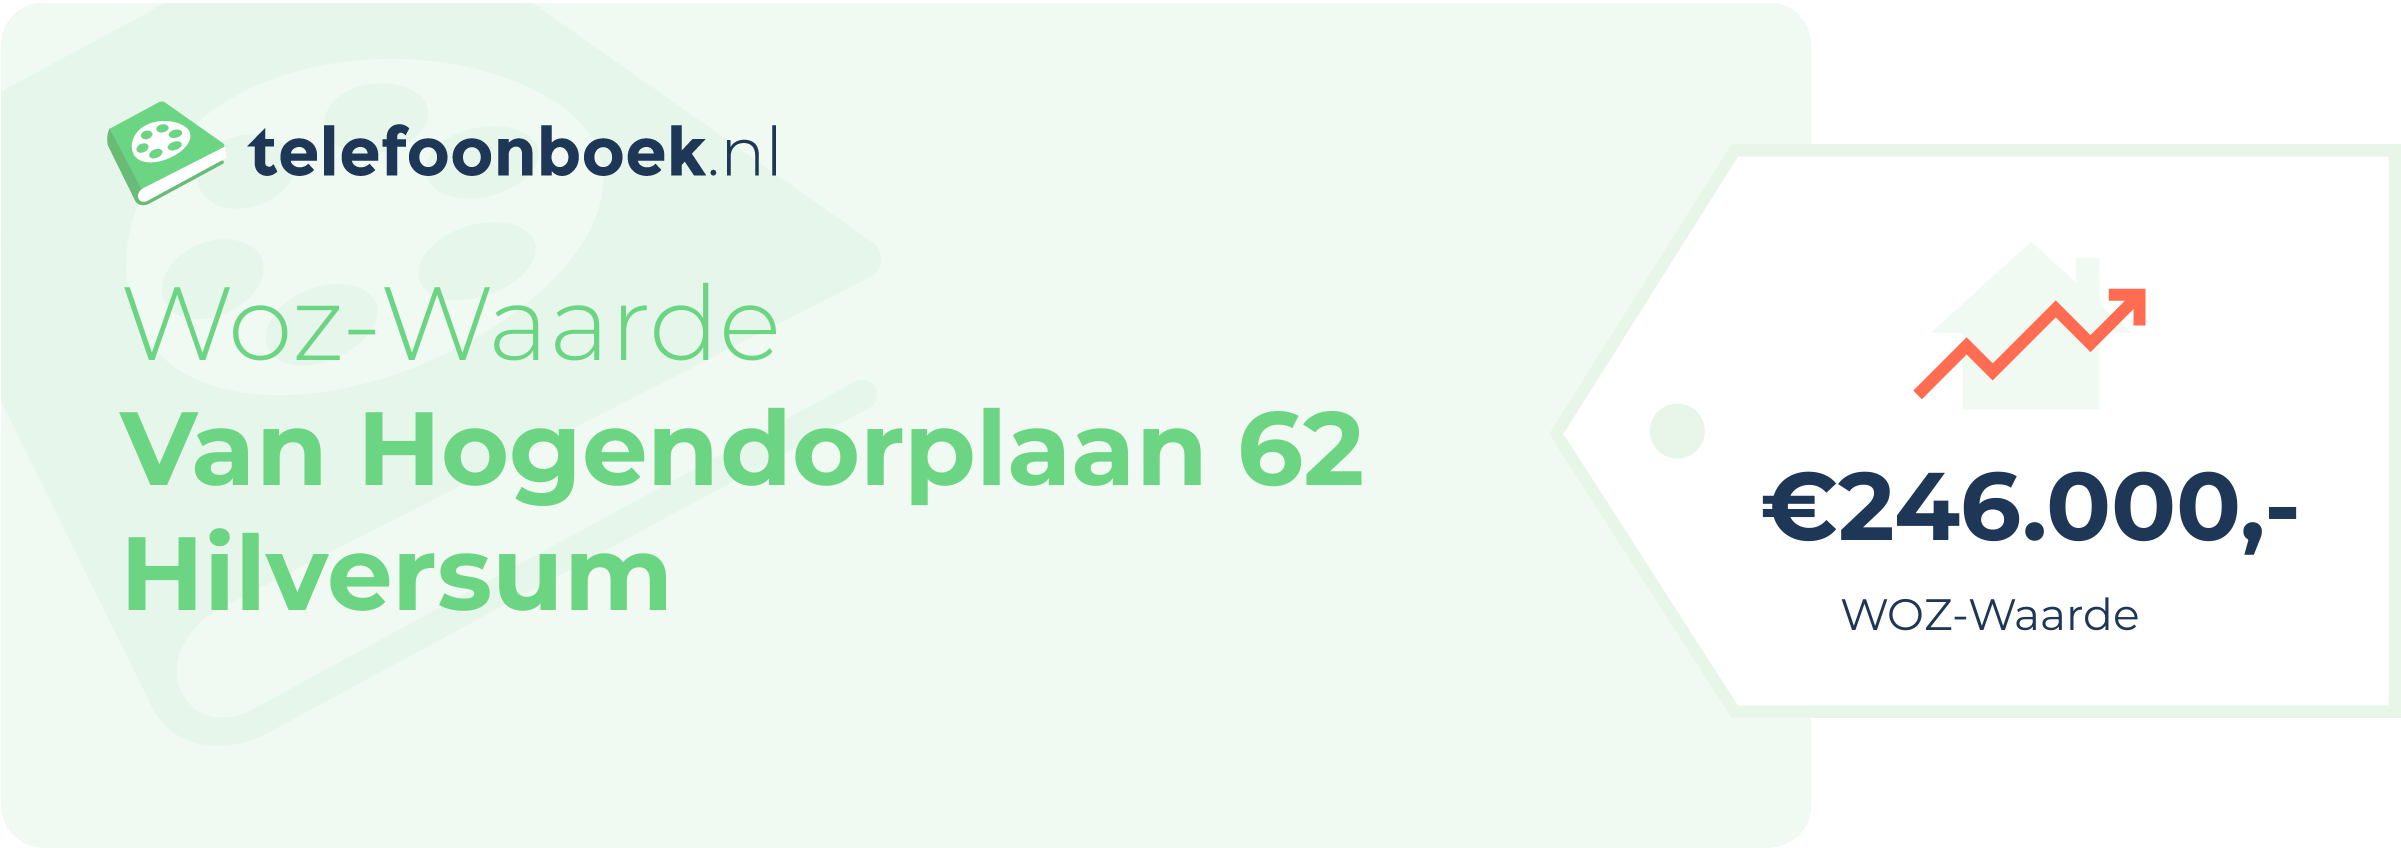 WOZ-waarde Van Hogendorplaan 62 Hilversum